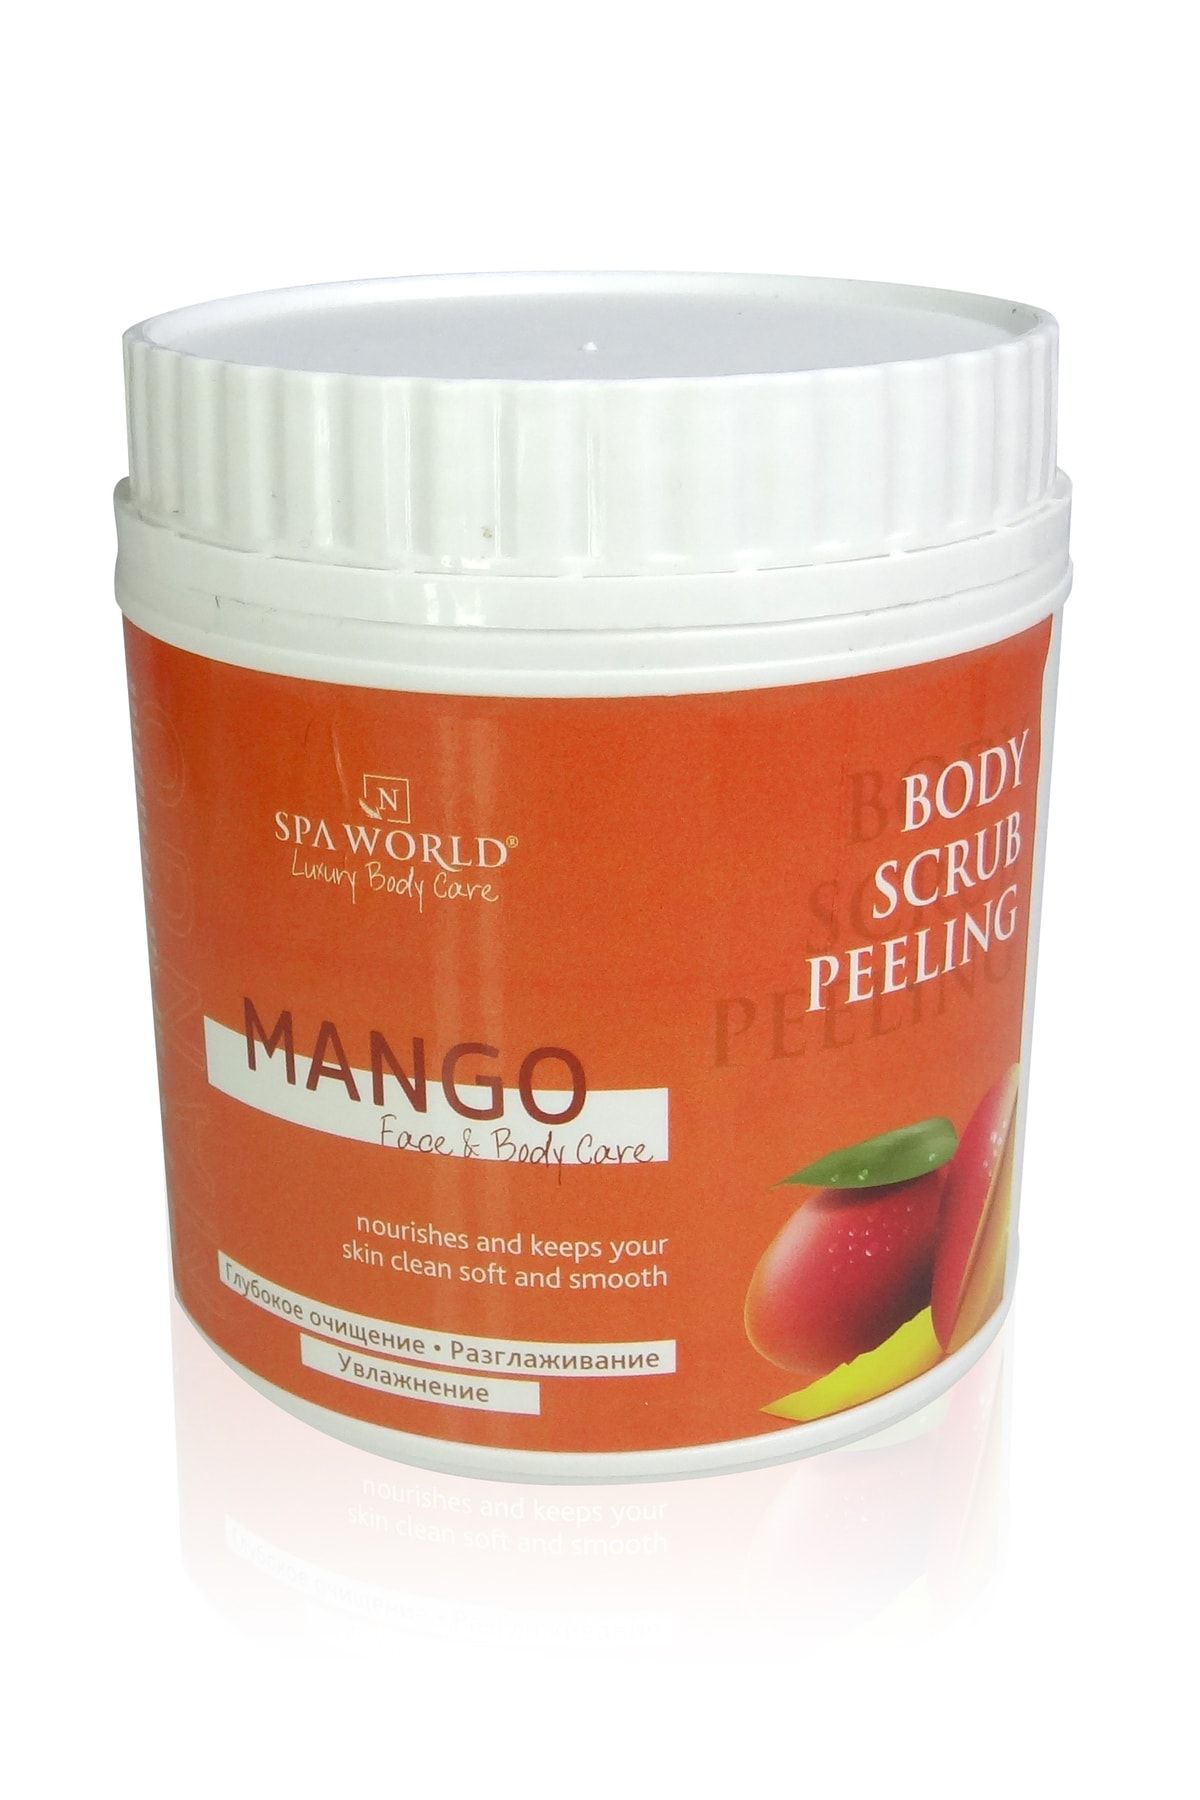 SPA WORLD Mango Body Scrub Peeling (EPİLASYON ÖNCESİ VE SONRASI VÜCUT PEELİNG) 750gr